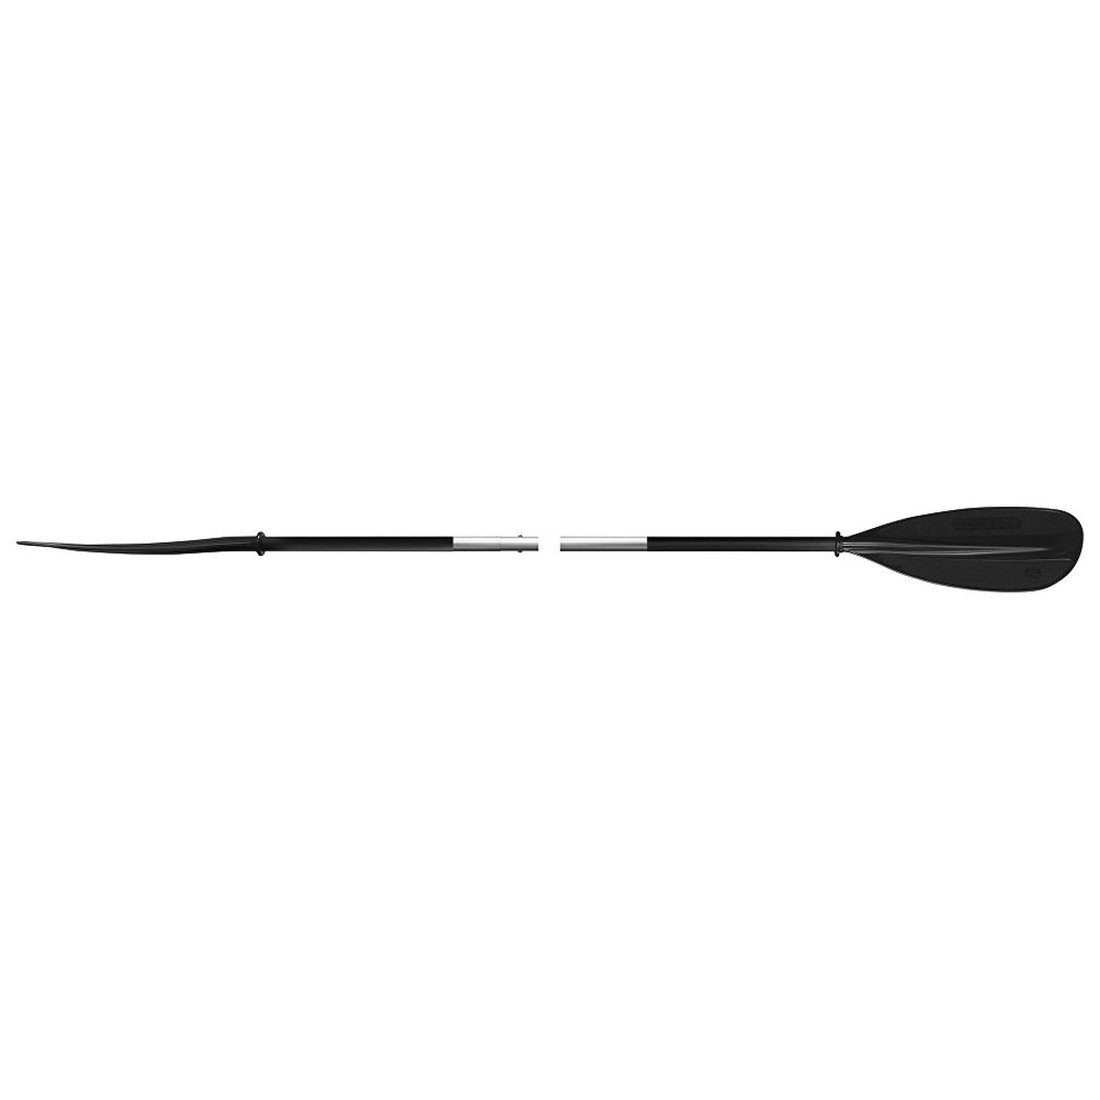 Pádlo Gumotex 702.2 Asymetric kayak – dvoudílné Délka pádla: 220 cm / Barva: černá